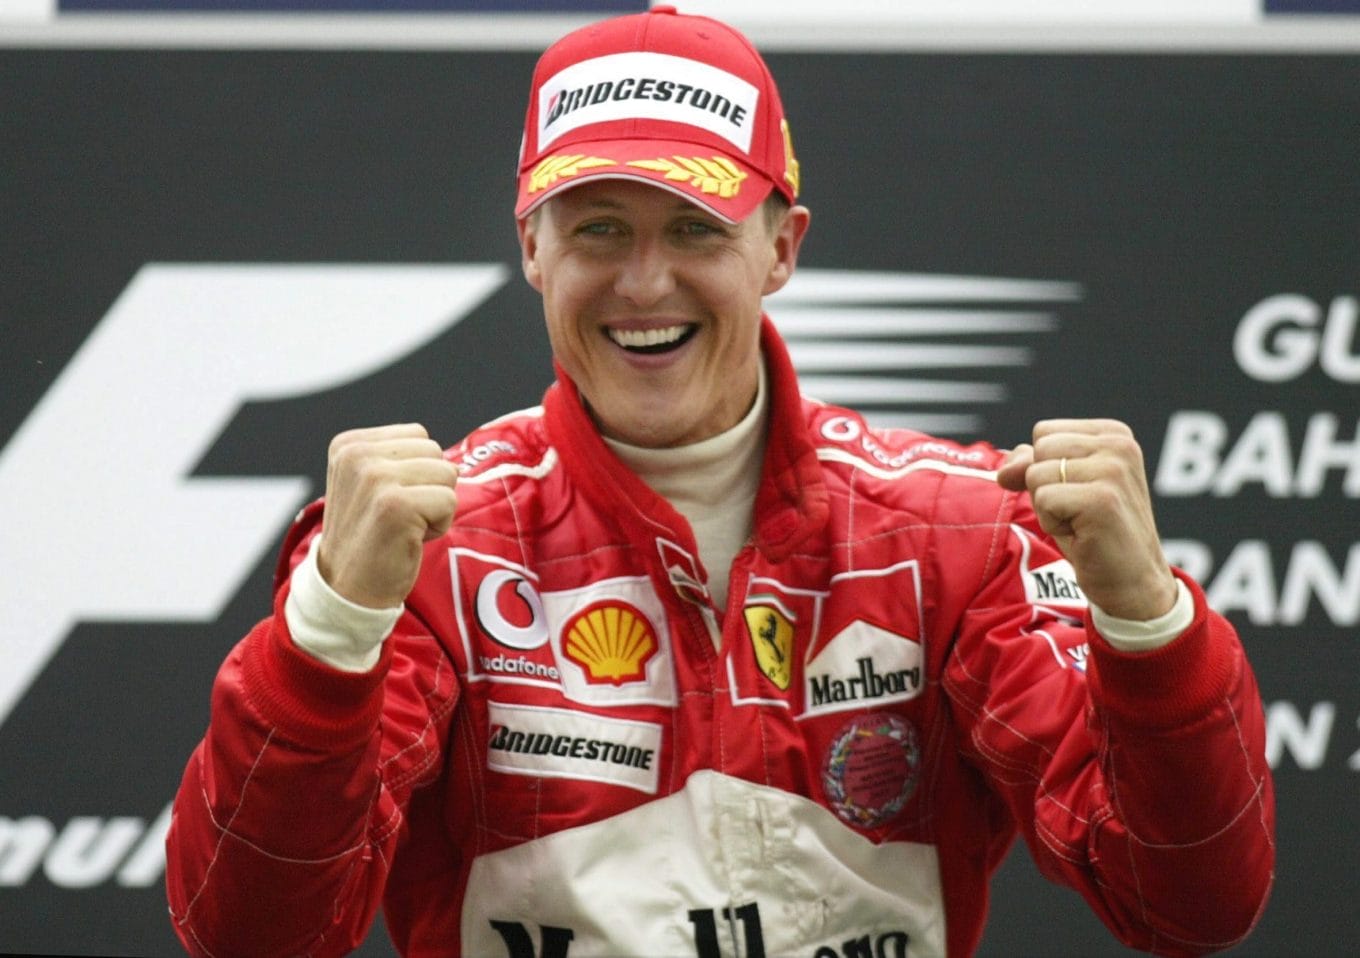 Michael Schumacher in 2004